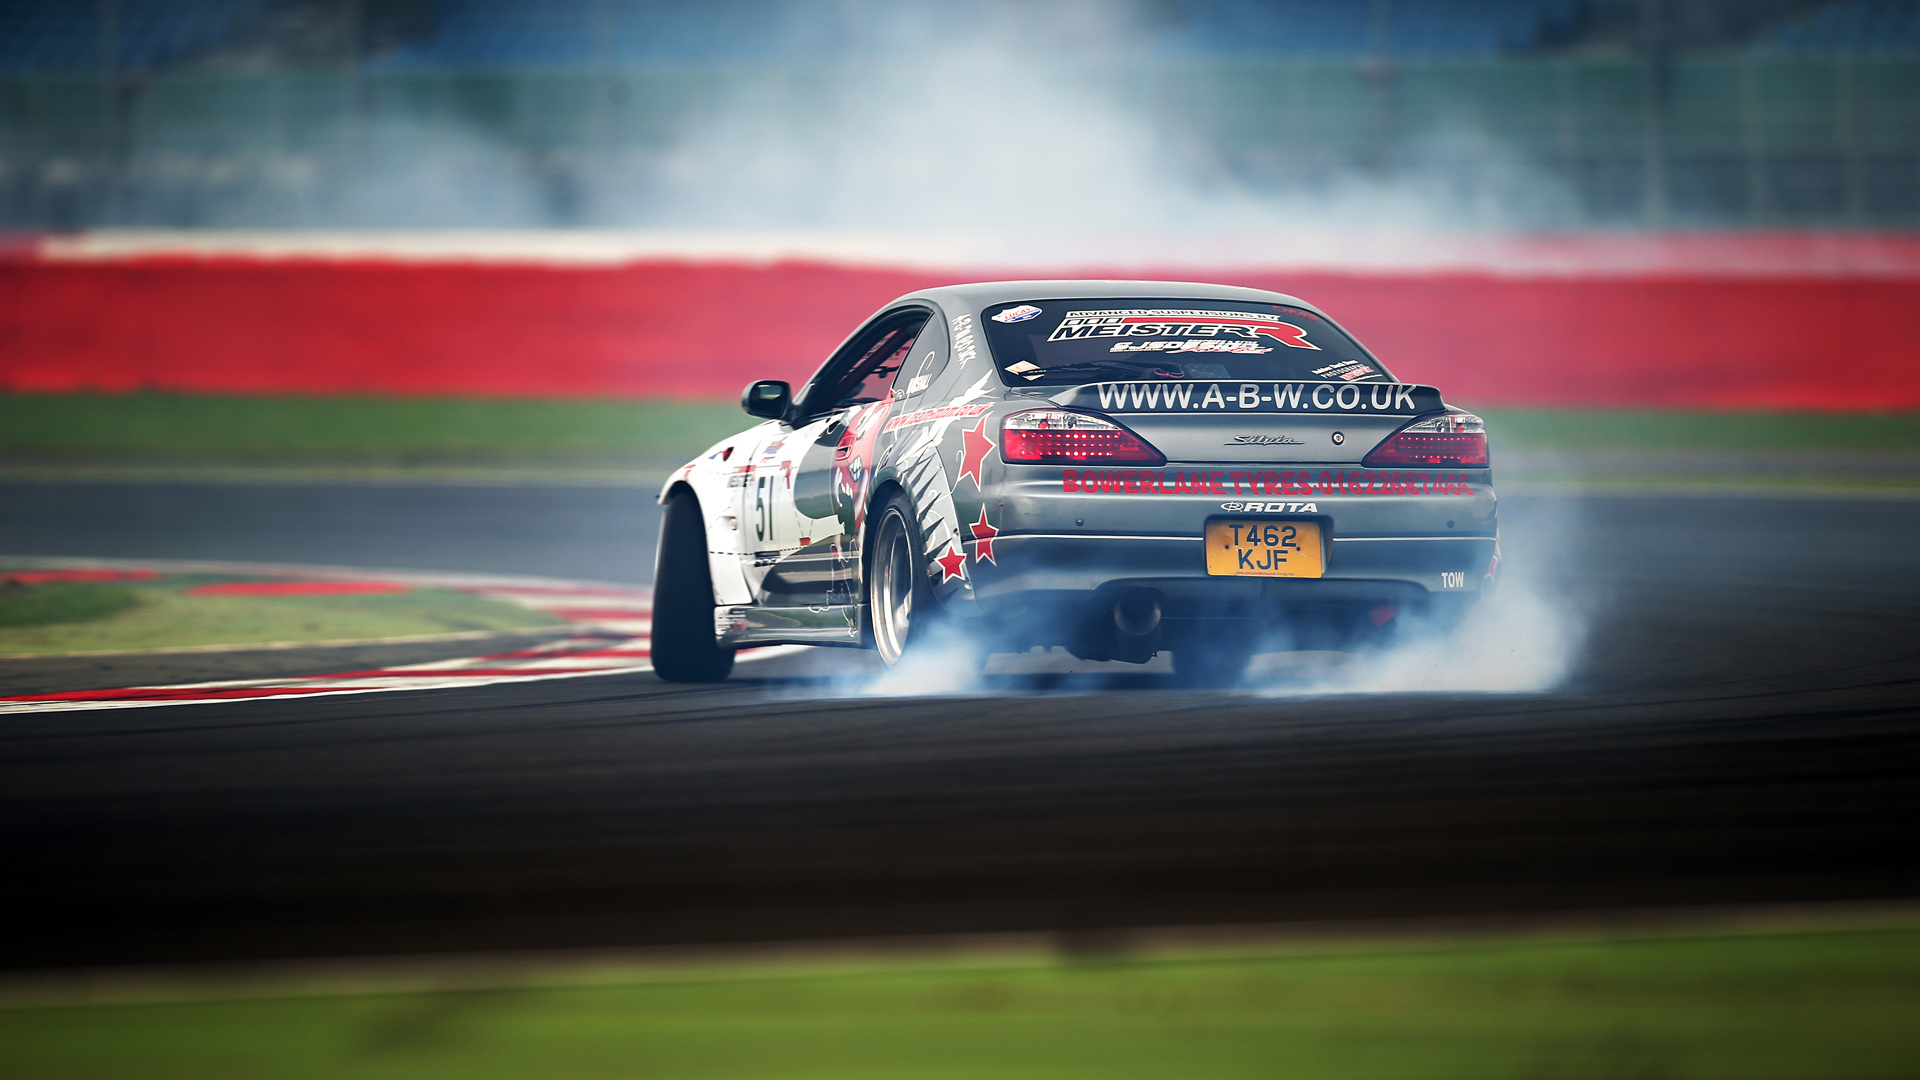 drift, smoke, race car, racing, vehicles, drifting